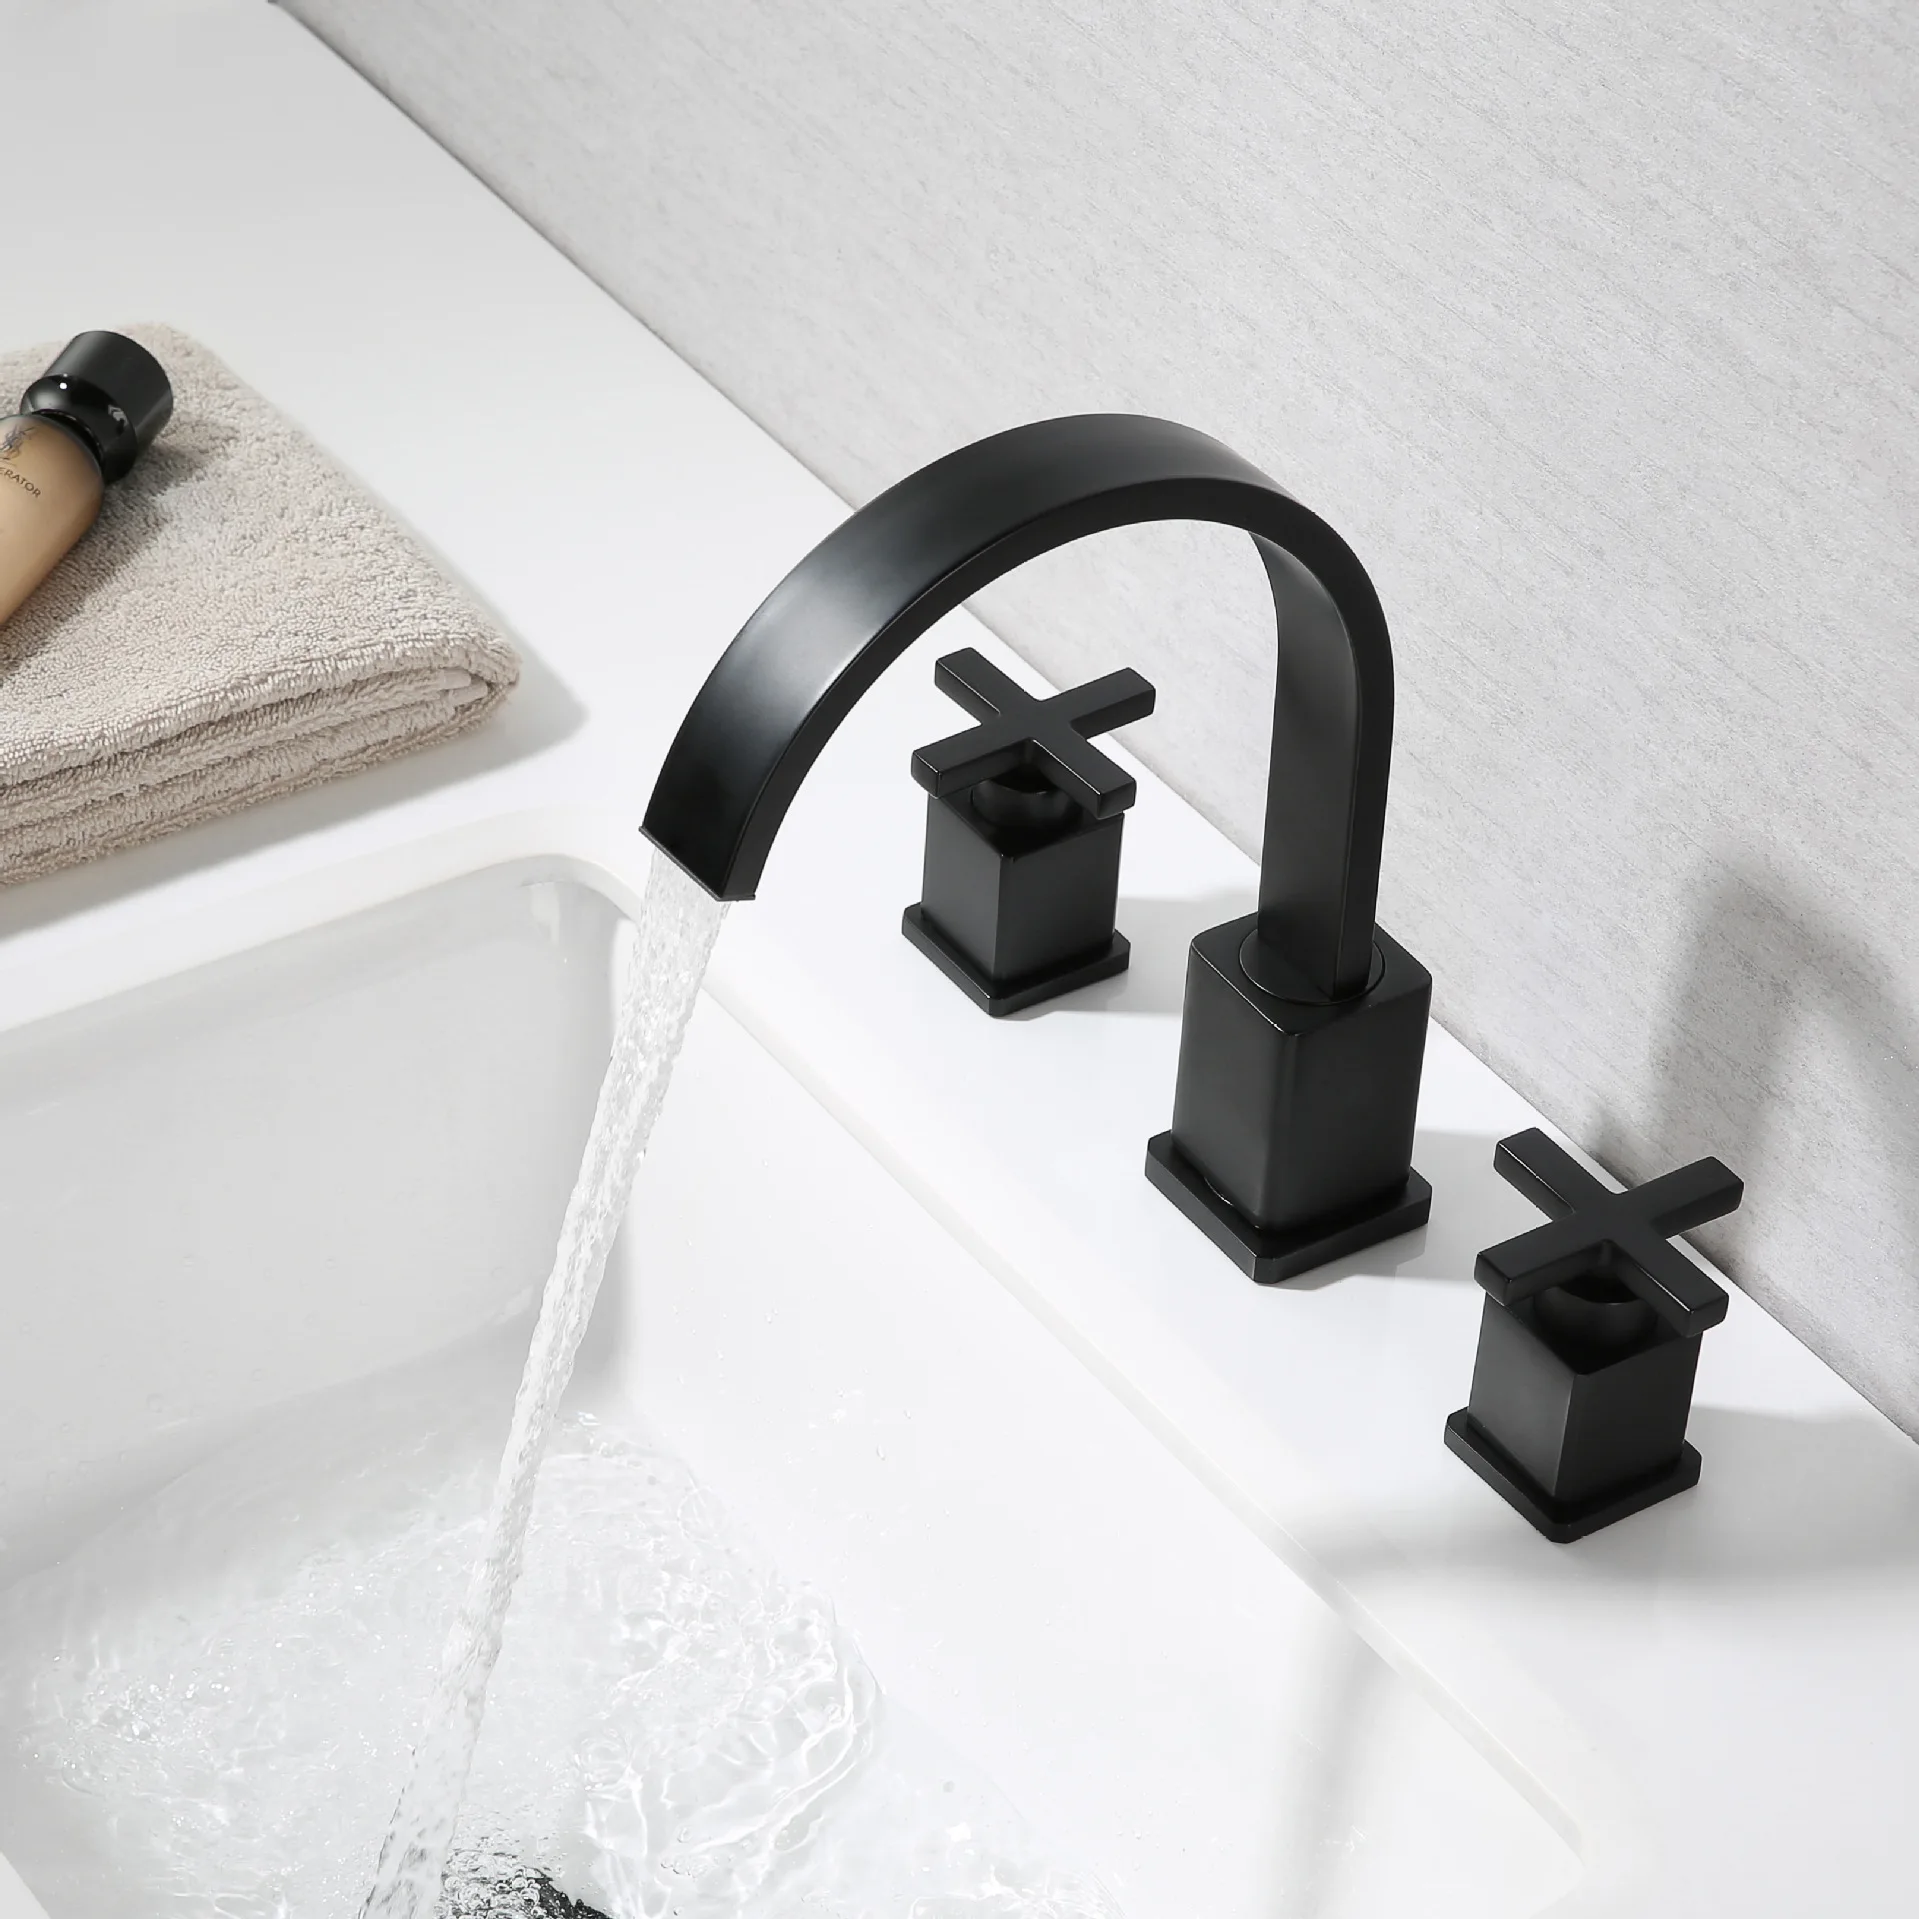 Новый стиль, черный латунный кран для раковины в ванной комнате, три отверстия, Смеситель для раковины с двумя ручками, Кран для холодной и горячей воды, высококачественный кран для ванной комнаты